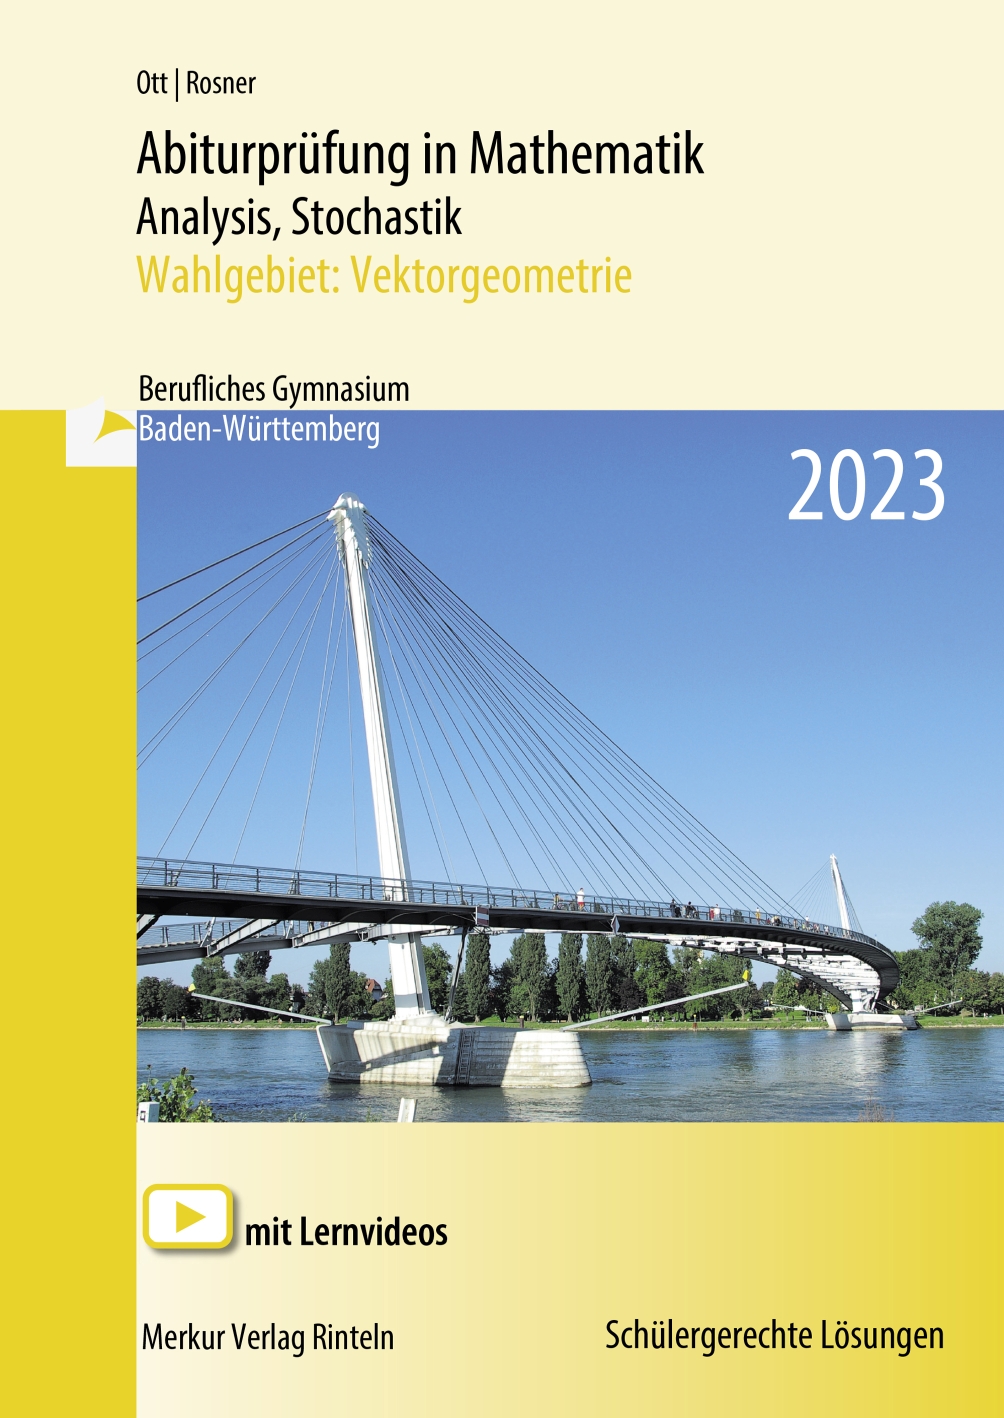 Abiturprüfung in Mathematik Analysis, Stochastik - 2023 Wahlgebiet: Vektorgeometrie Berufliches Gymnasium Baden-Württemberg